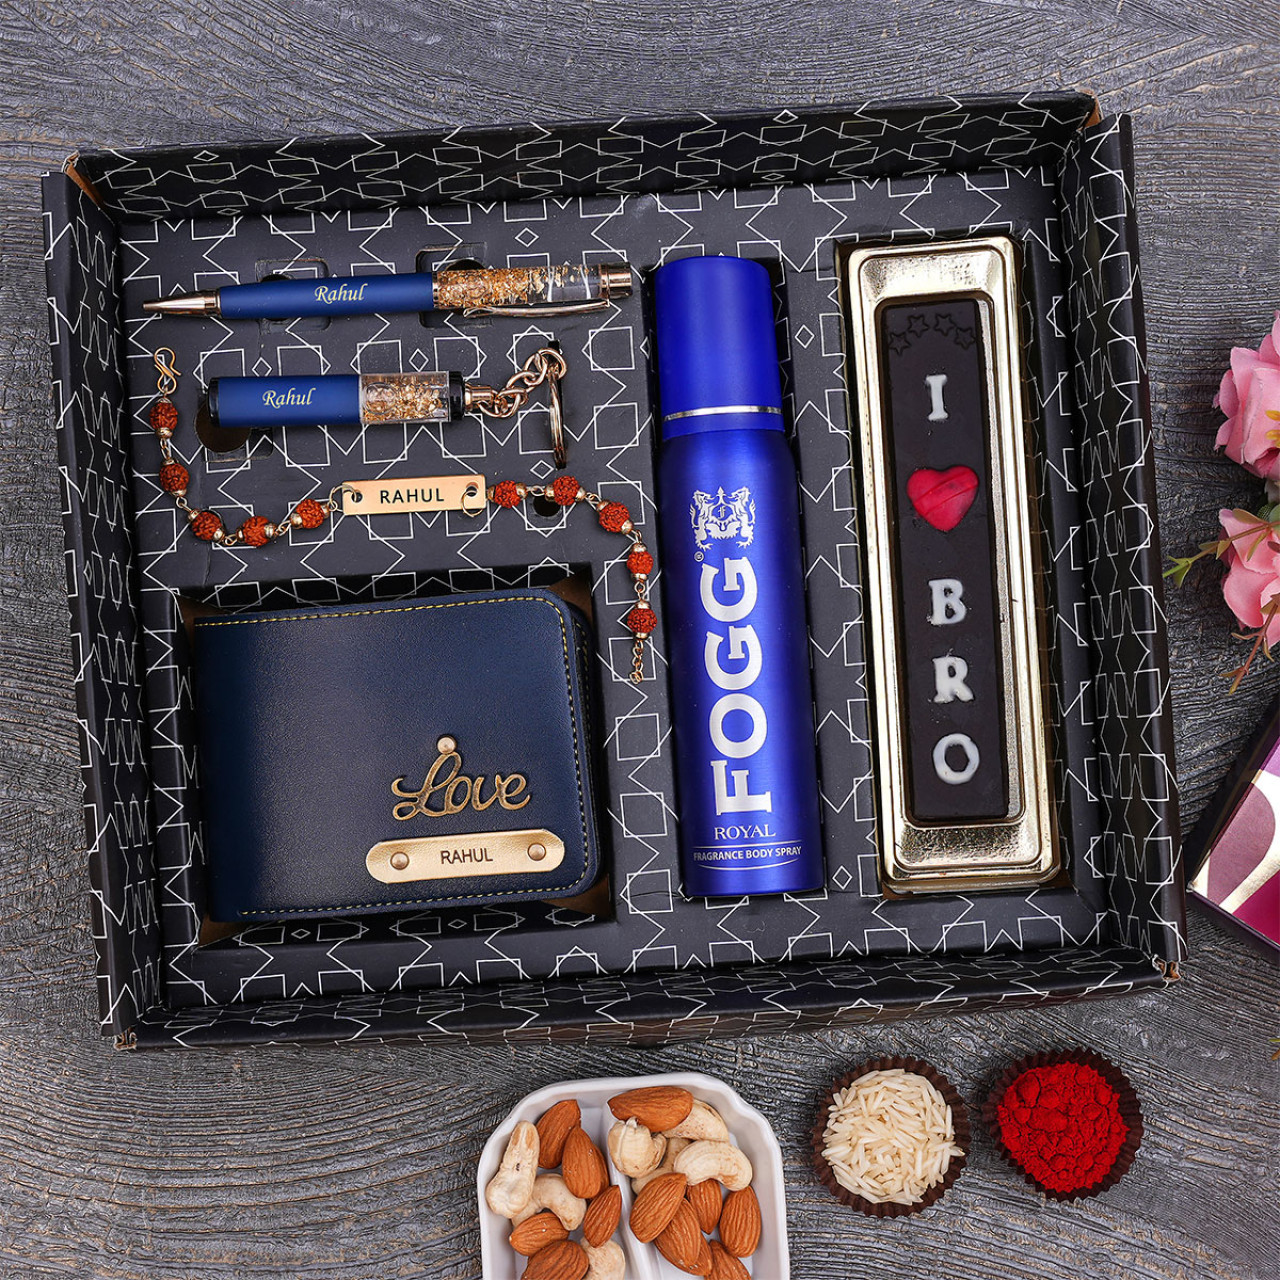 Personalized Rakhi Gift Hamper With Chocolates